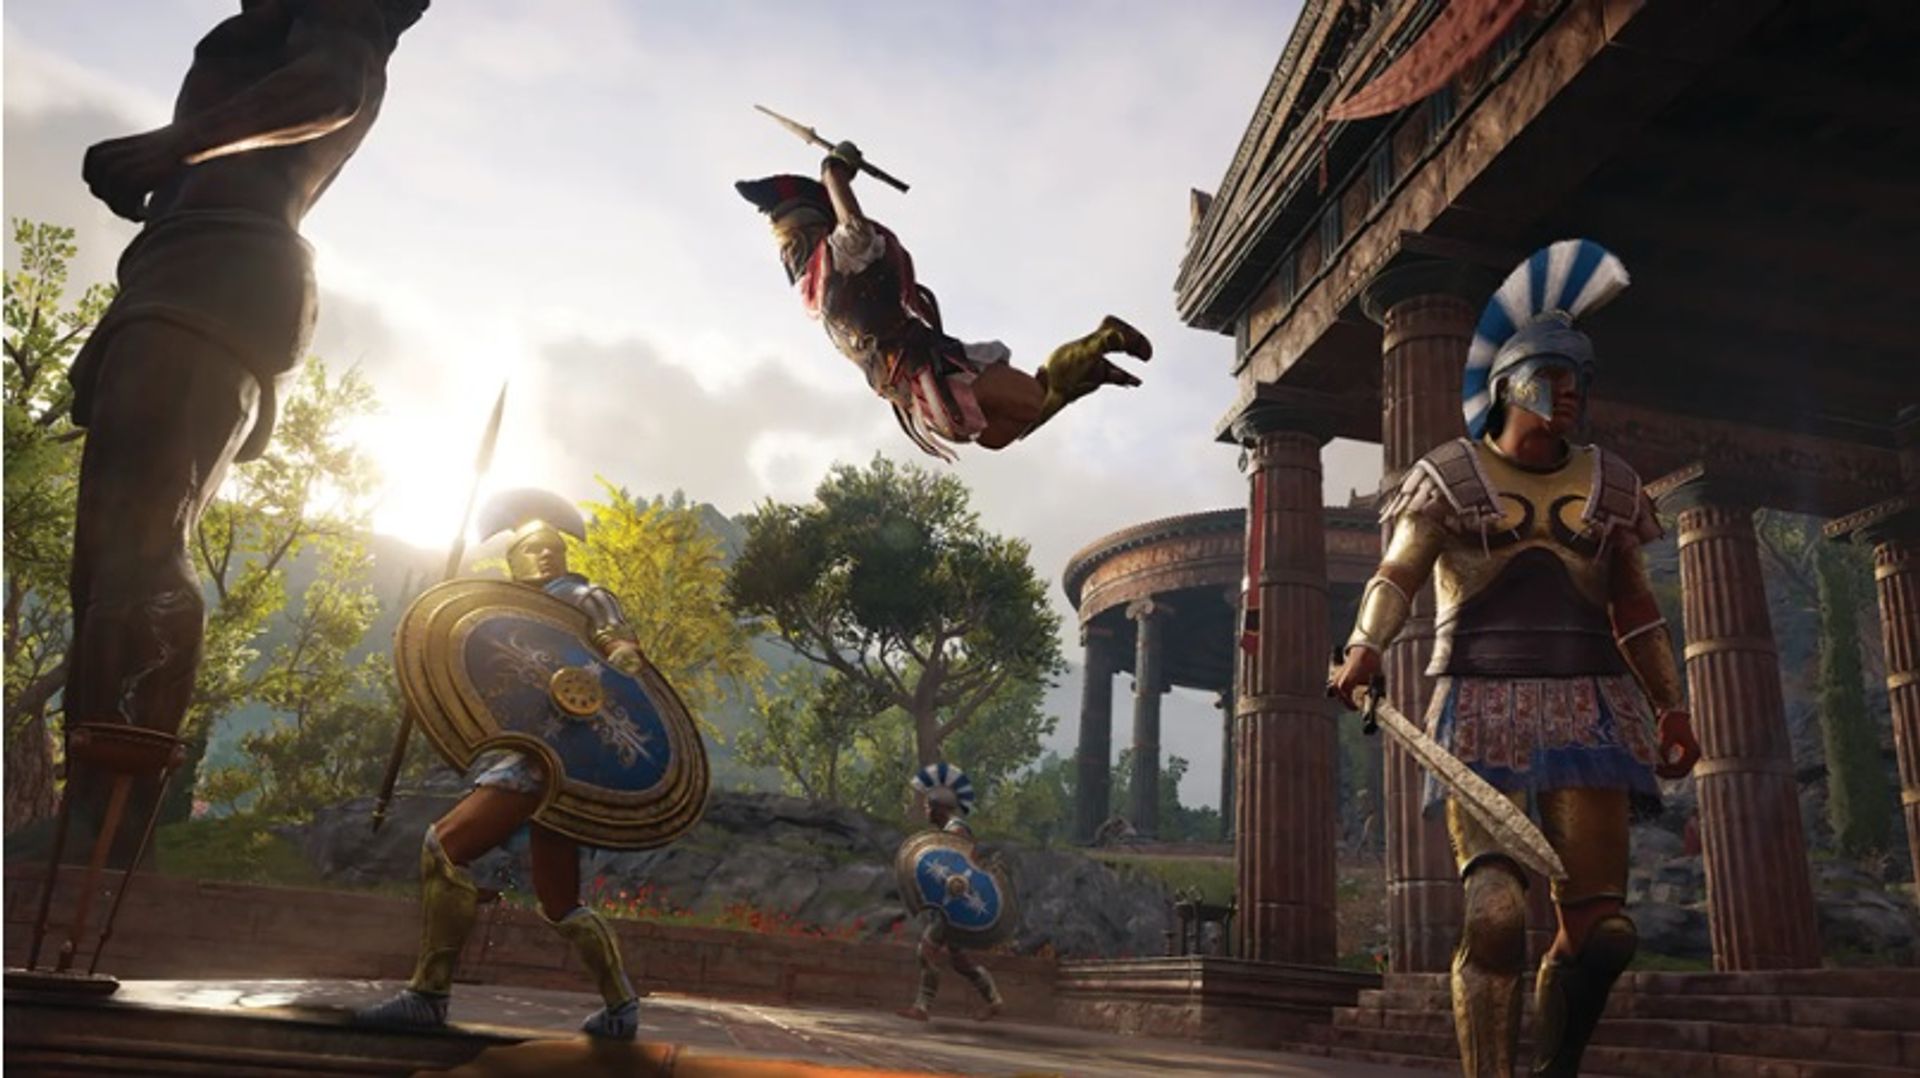 Assassin's Creed Odyssey מתרחש על רקע אתונה הקלאסית, כולל פרתנון בתולי

© IGDB